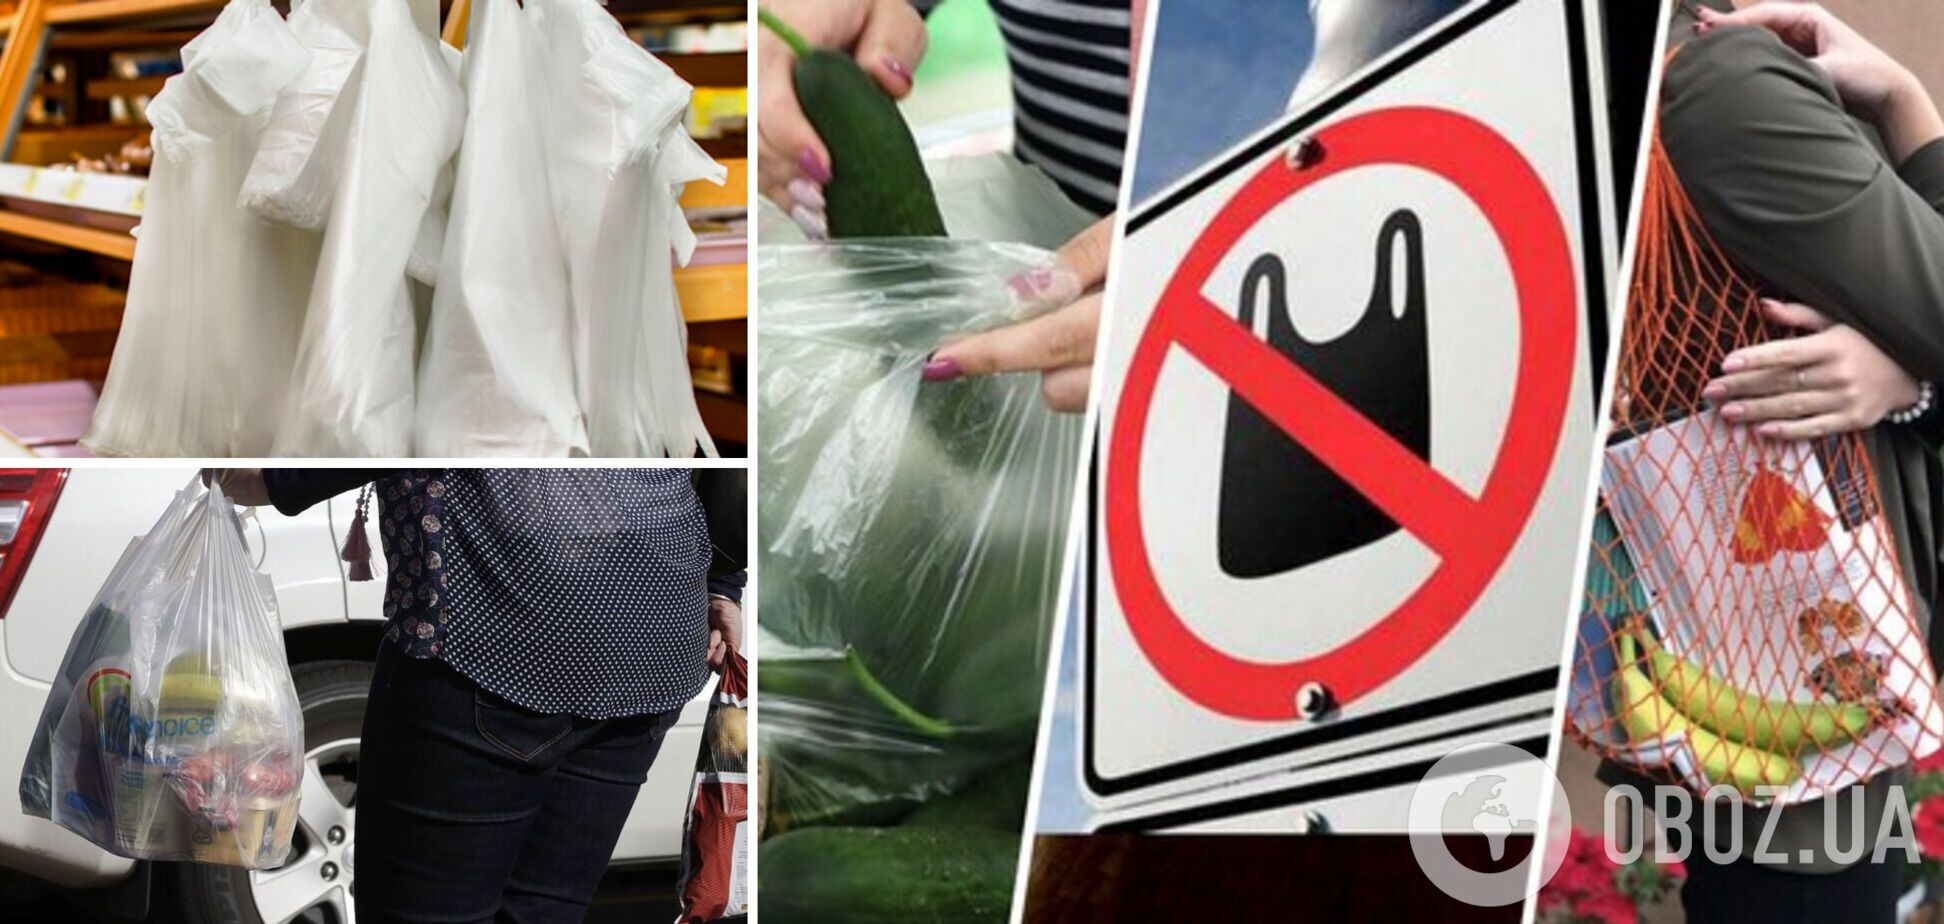 Украинцам придется платить за пластиковые пакеты в магазинах и супермаркетах